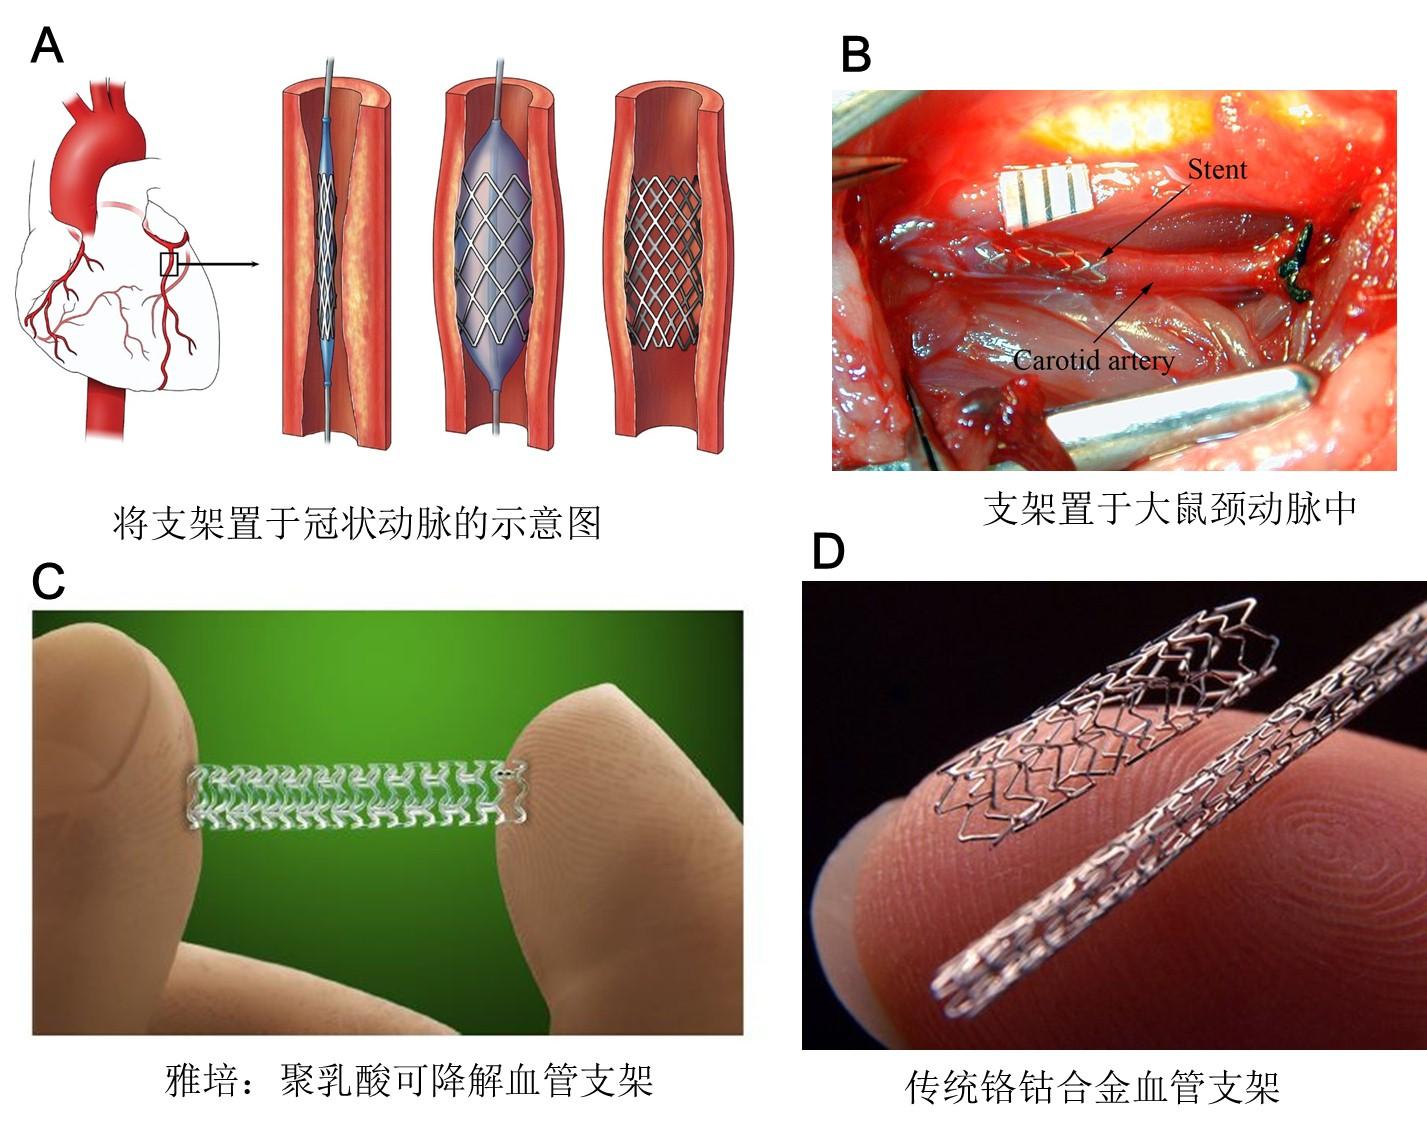 【病例分享】Minos®覆膜支架系统在上海市完成首例临床植入_患者